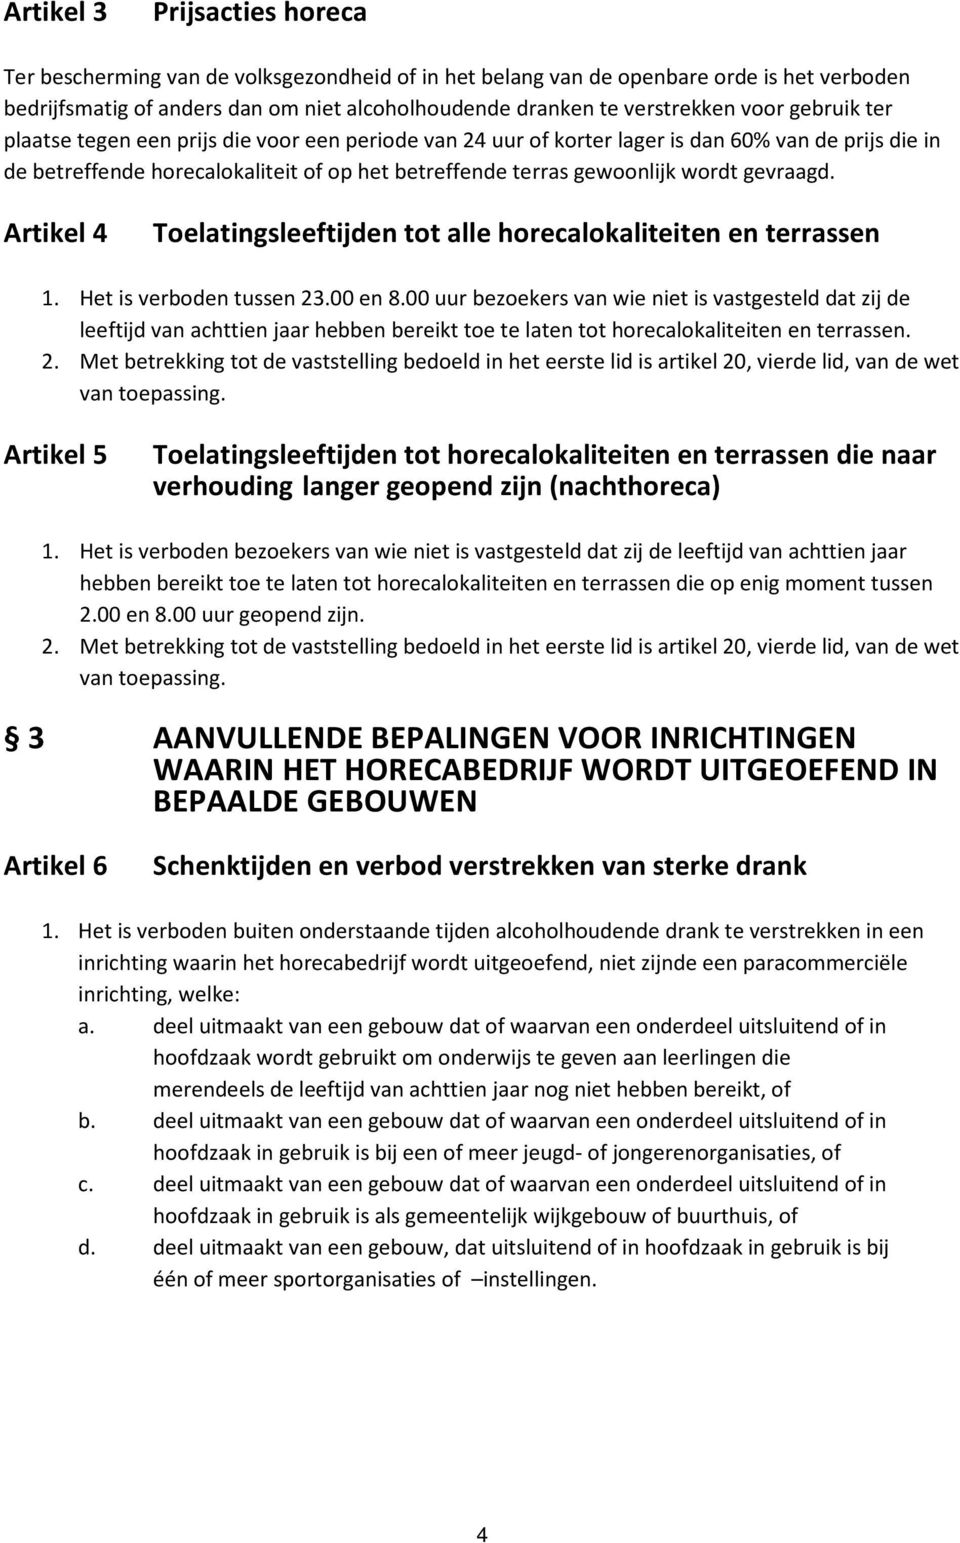 gevraagd. Artikel 4 Toelatingsleeftijden tot alle horecalokaliteiten en terrassen 1. Het is verboden tussen 23.00 en 8.